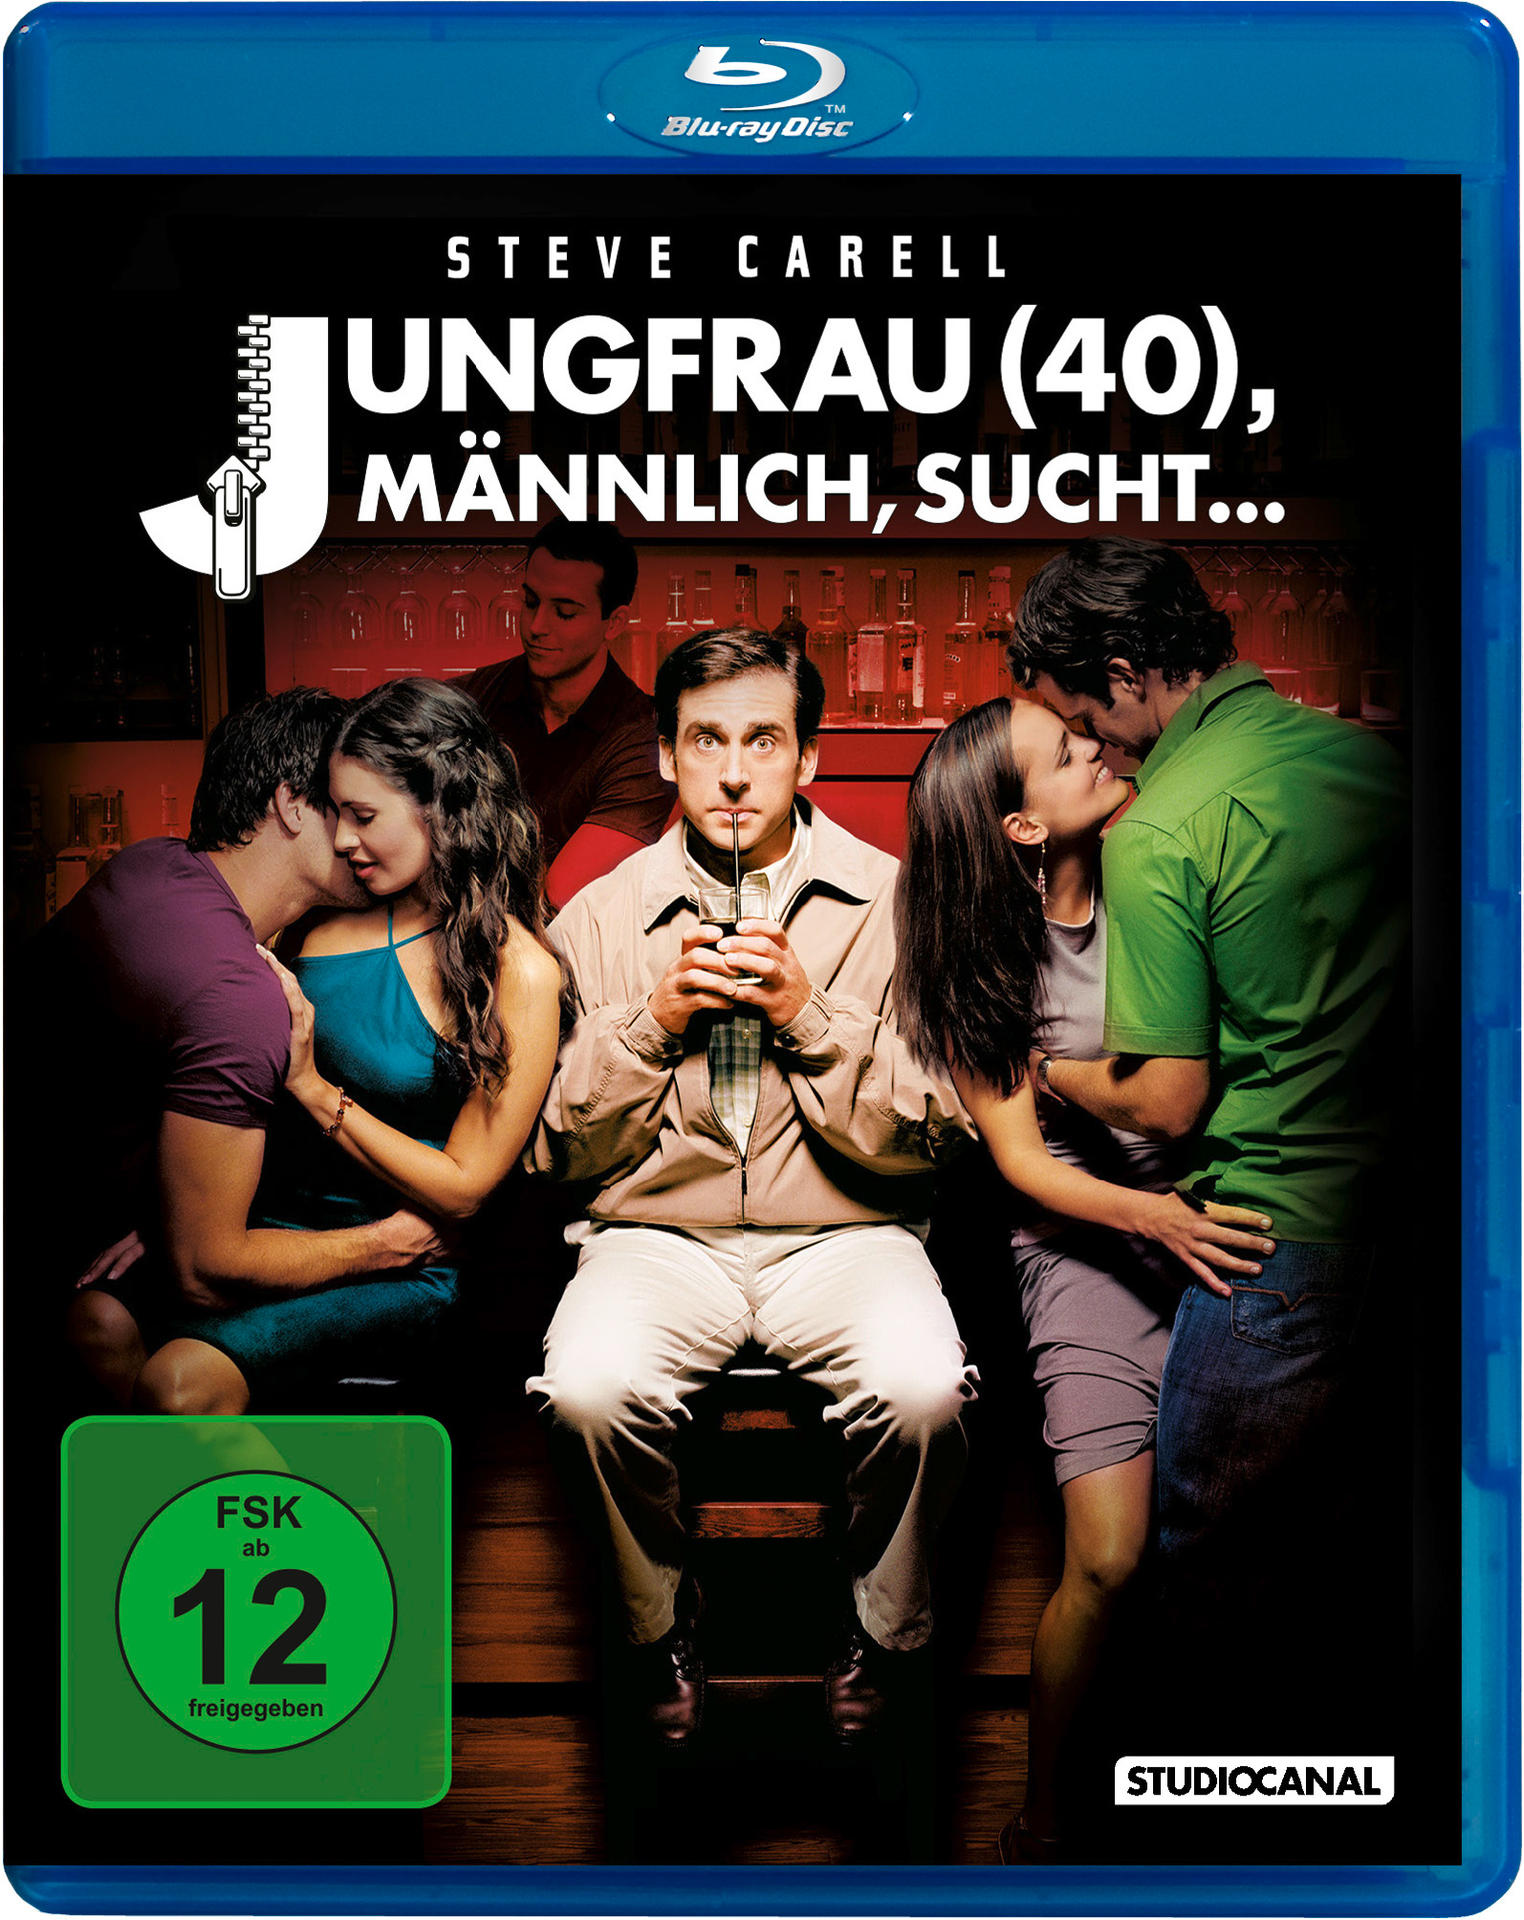 Jungfrau Blu-ray (40),maennlich,sucht...